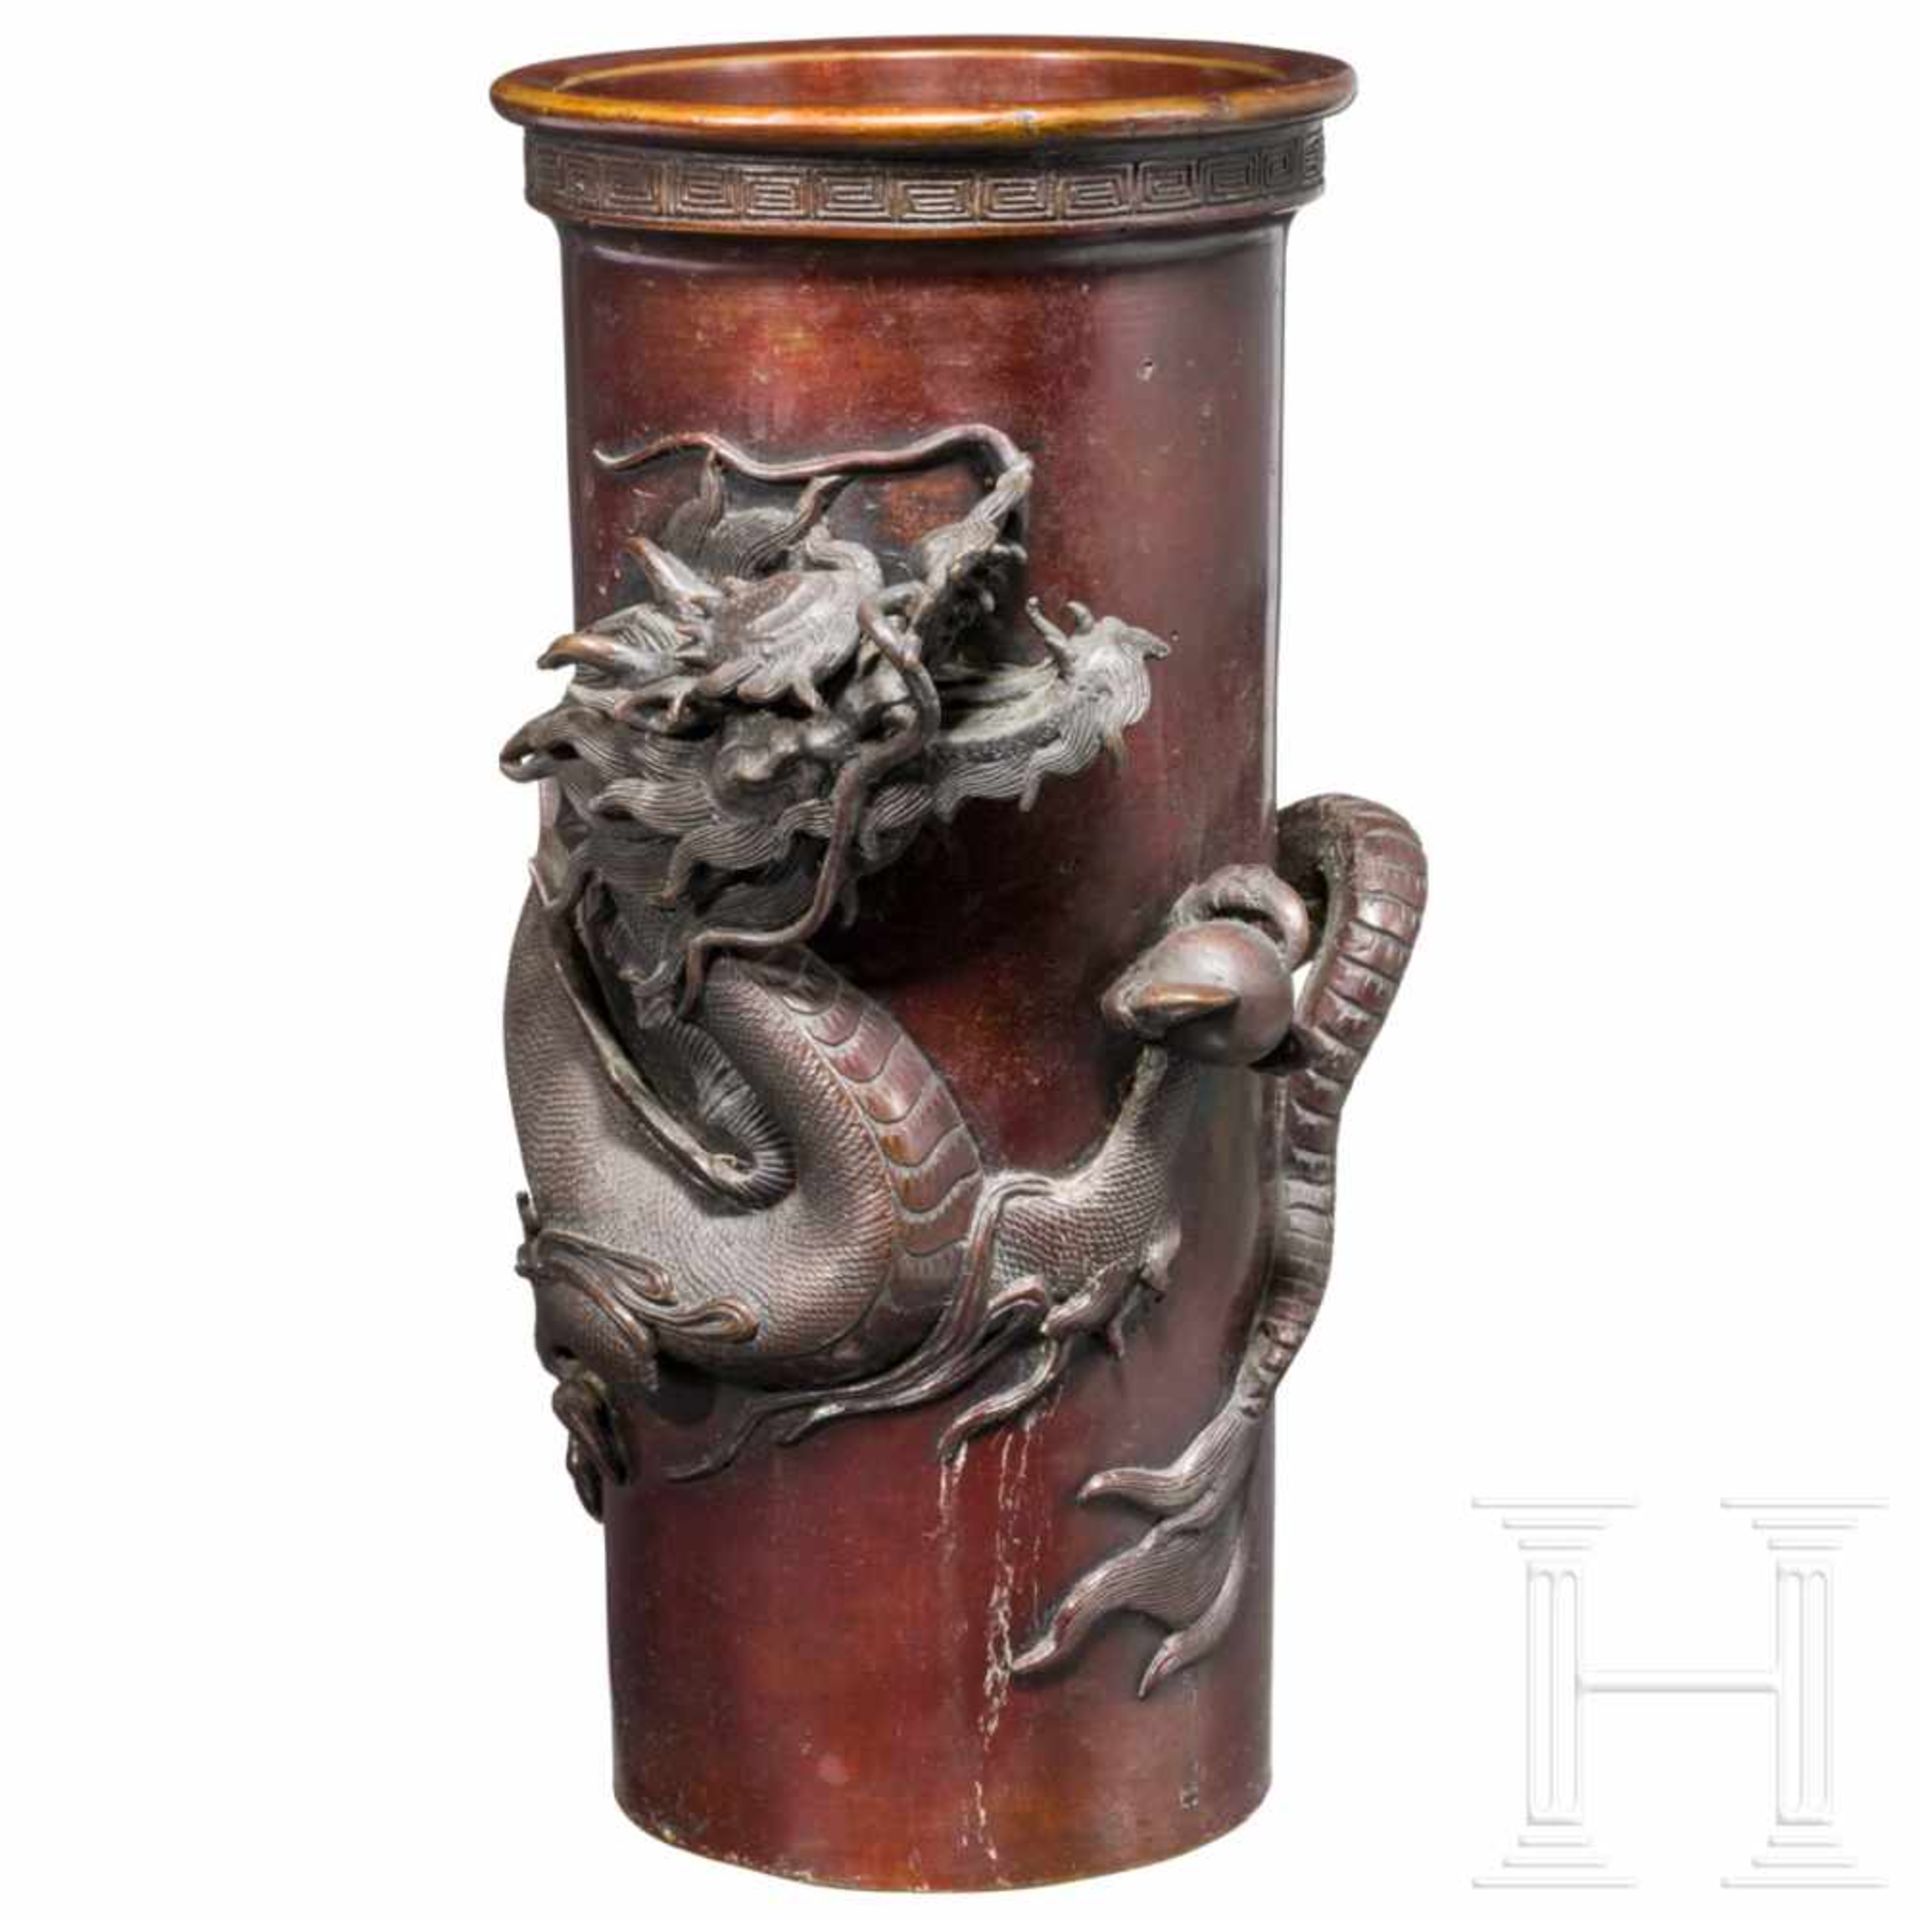 A bronze vase, Meiji-periodSentoku mit rötlicher Patina. Zylinderförmige Vase mit leicht